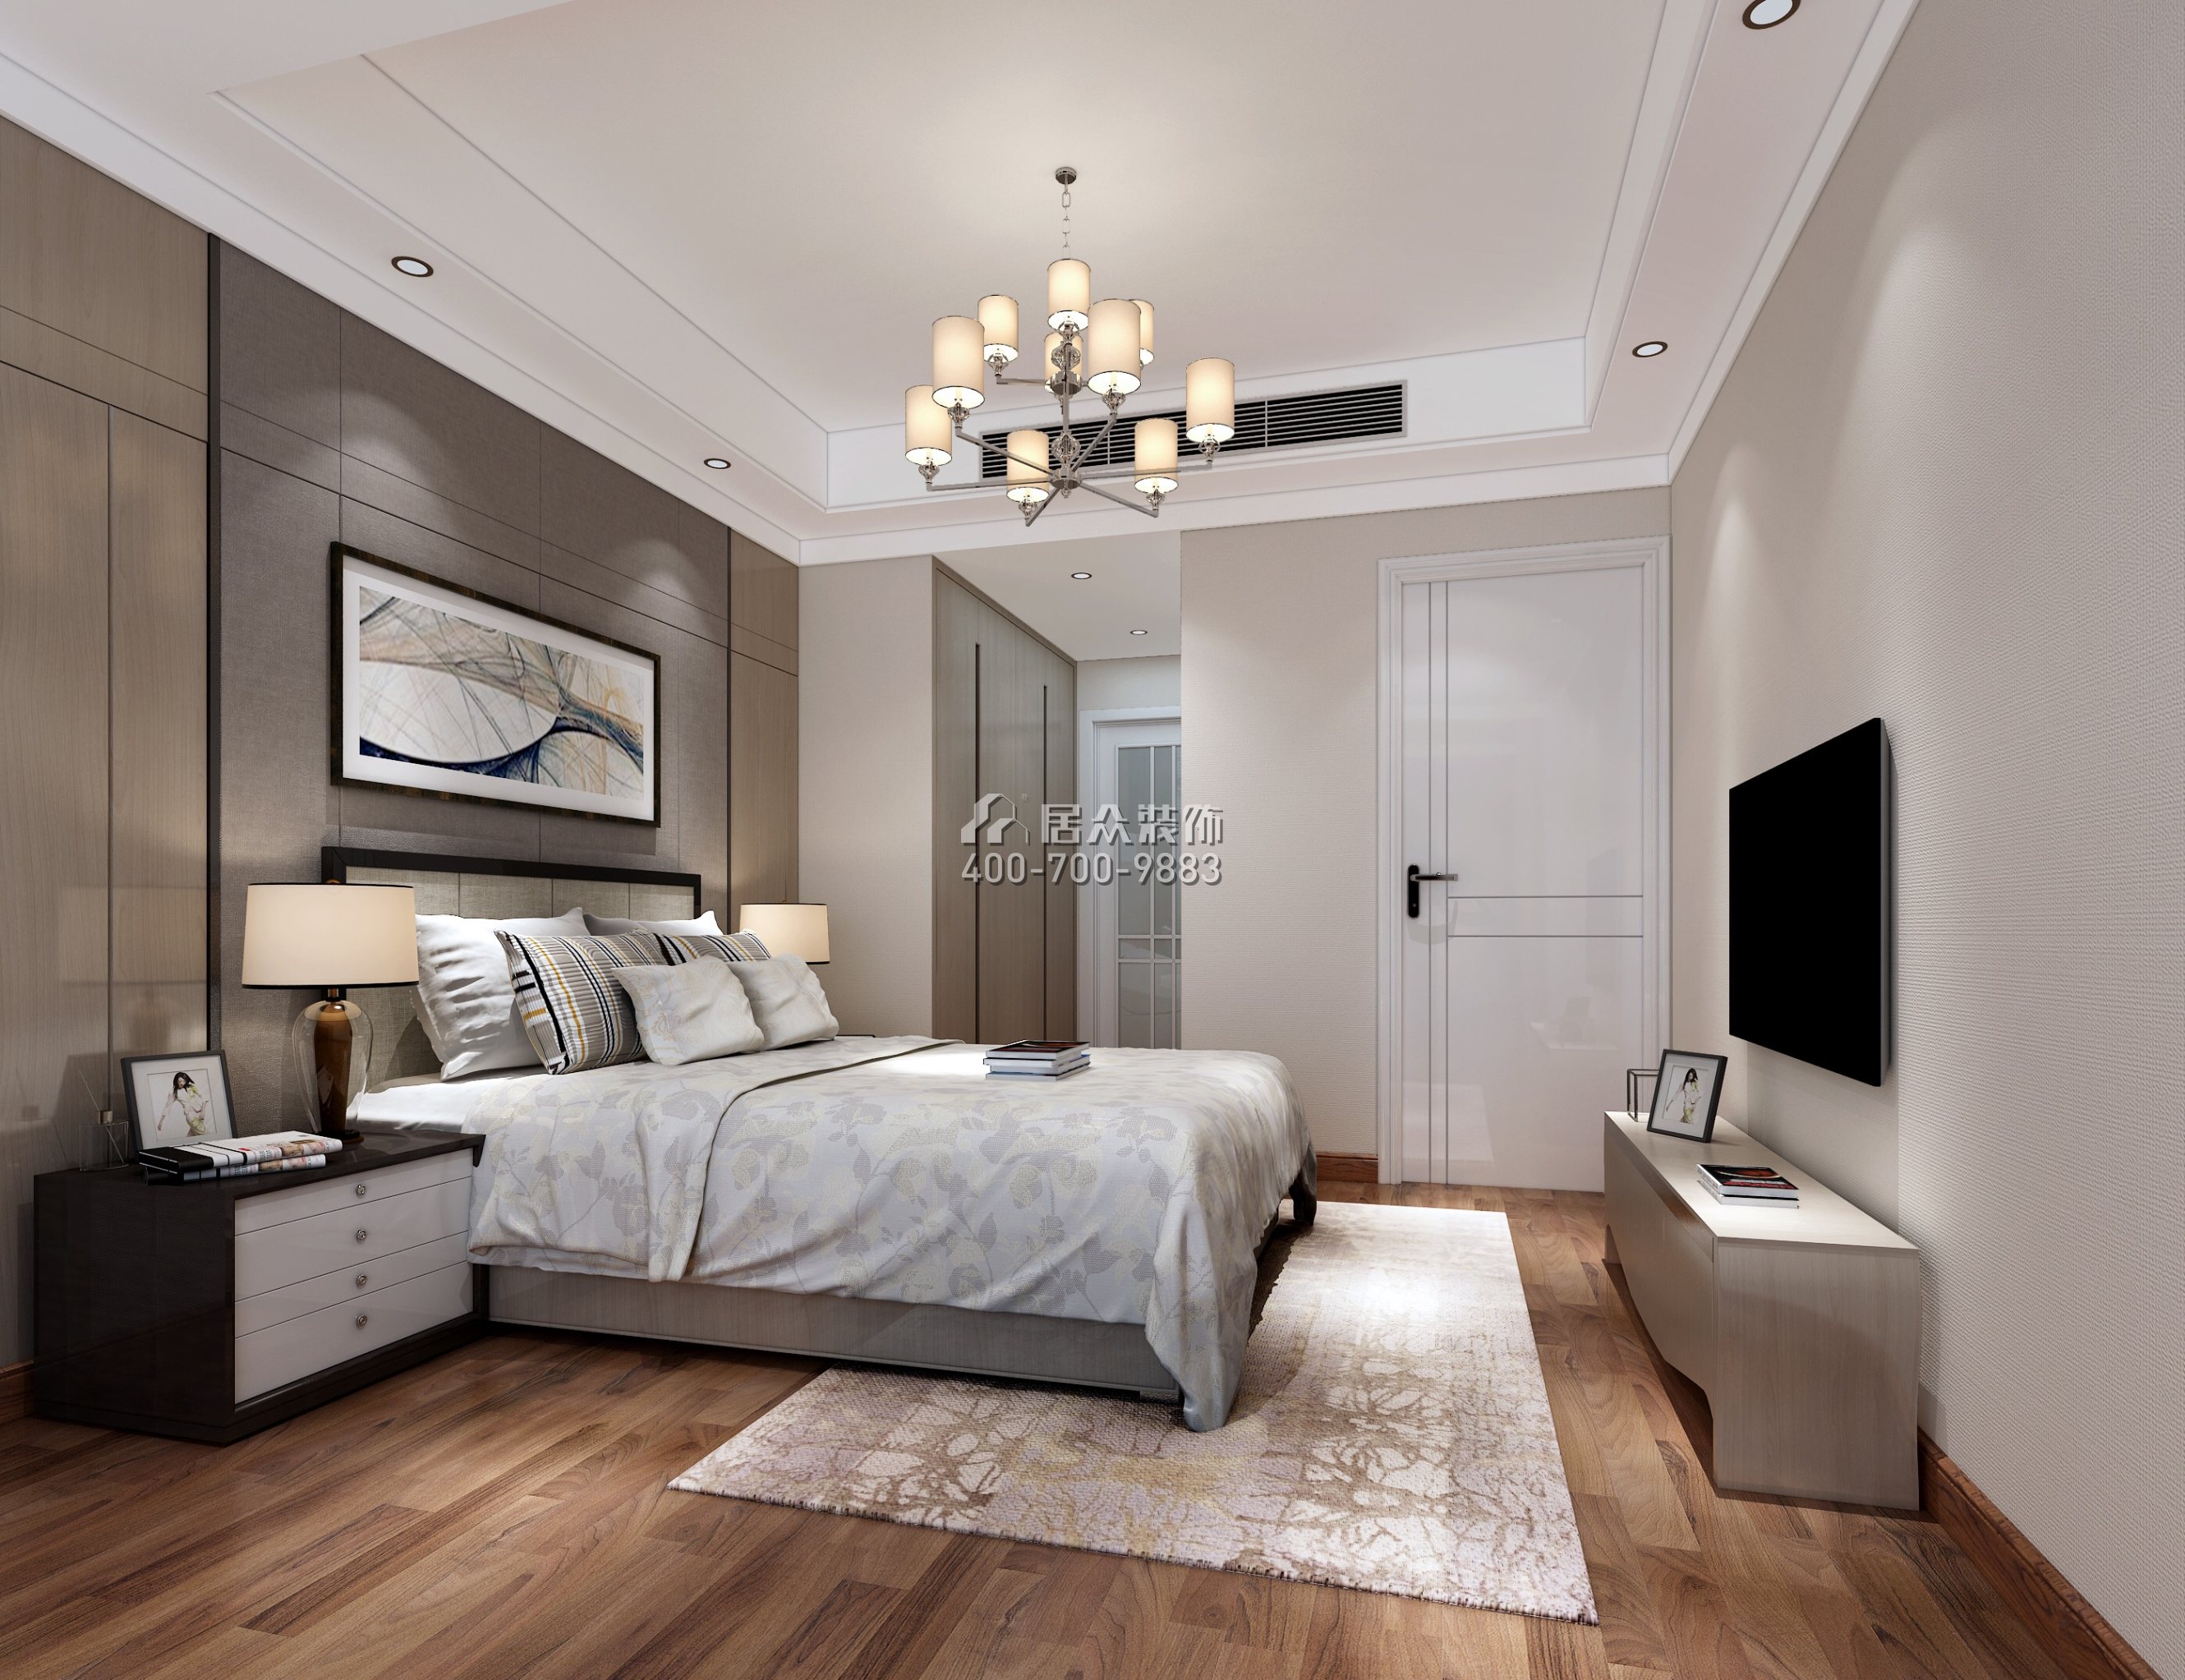 鸿荣园尚峰185平方米现代简约风格复式户型卧室装修效果图